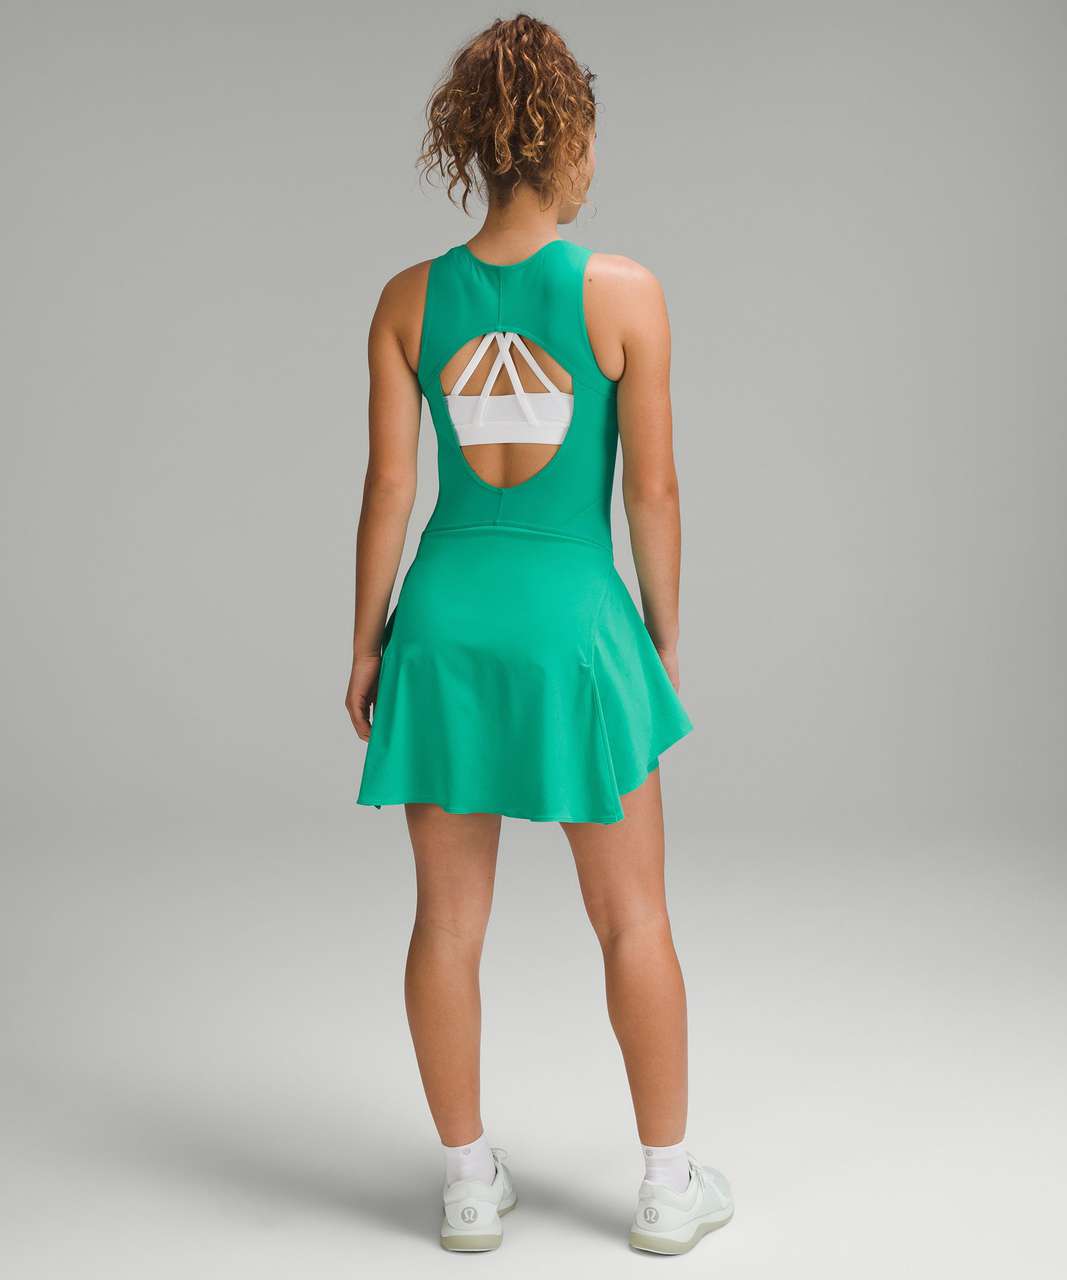 Lululemon Everlux Short-Lined Tennis Tank Top Dress 6" - Maldives Green